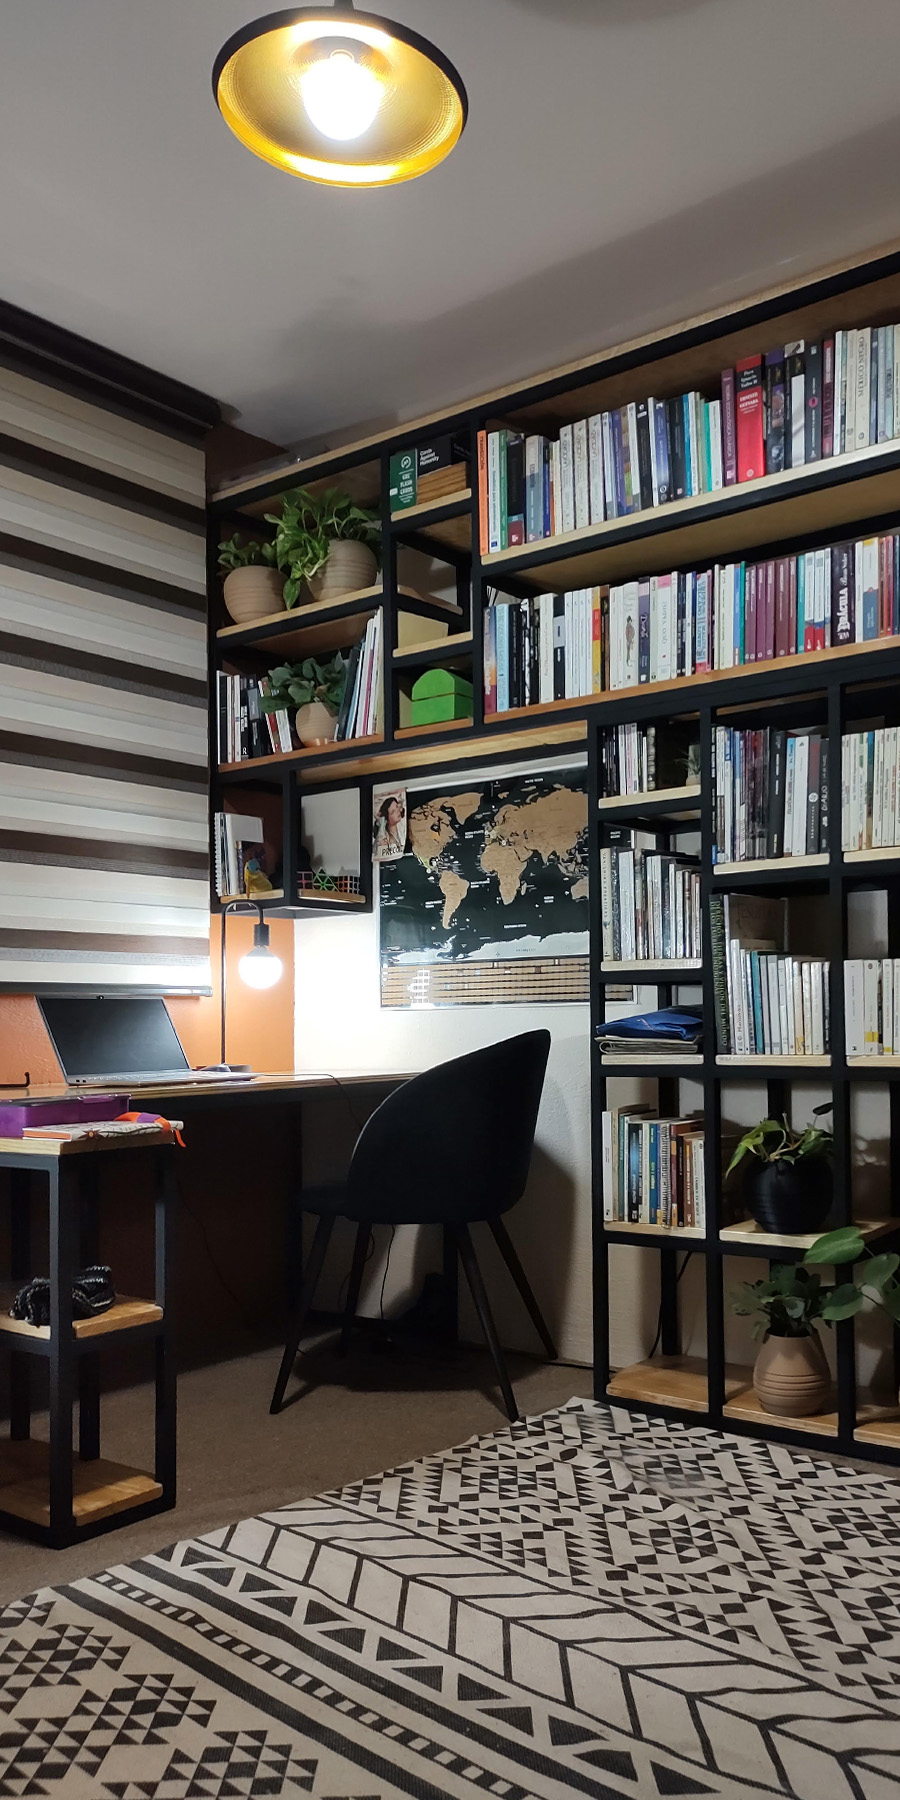 Sala de trabajo con estantes metálicos negros de base de madera adornados con plantas y libros, una cortina rayada adorna la ventana de la sala.